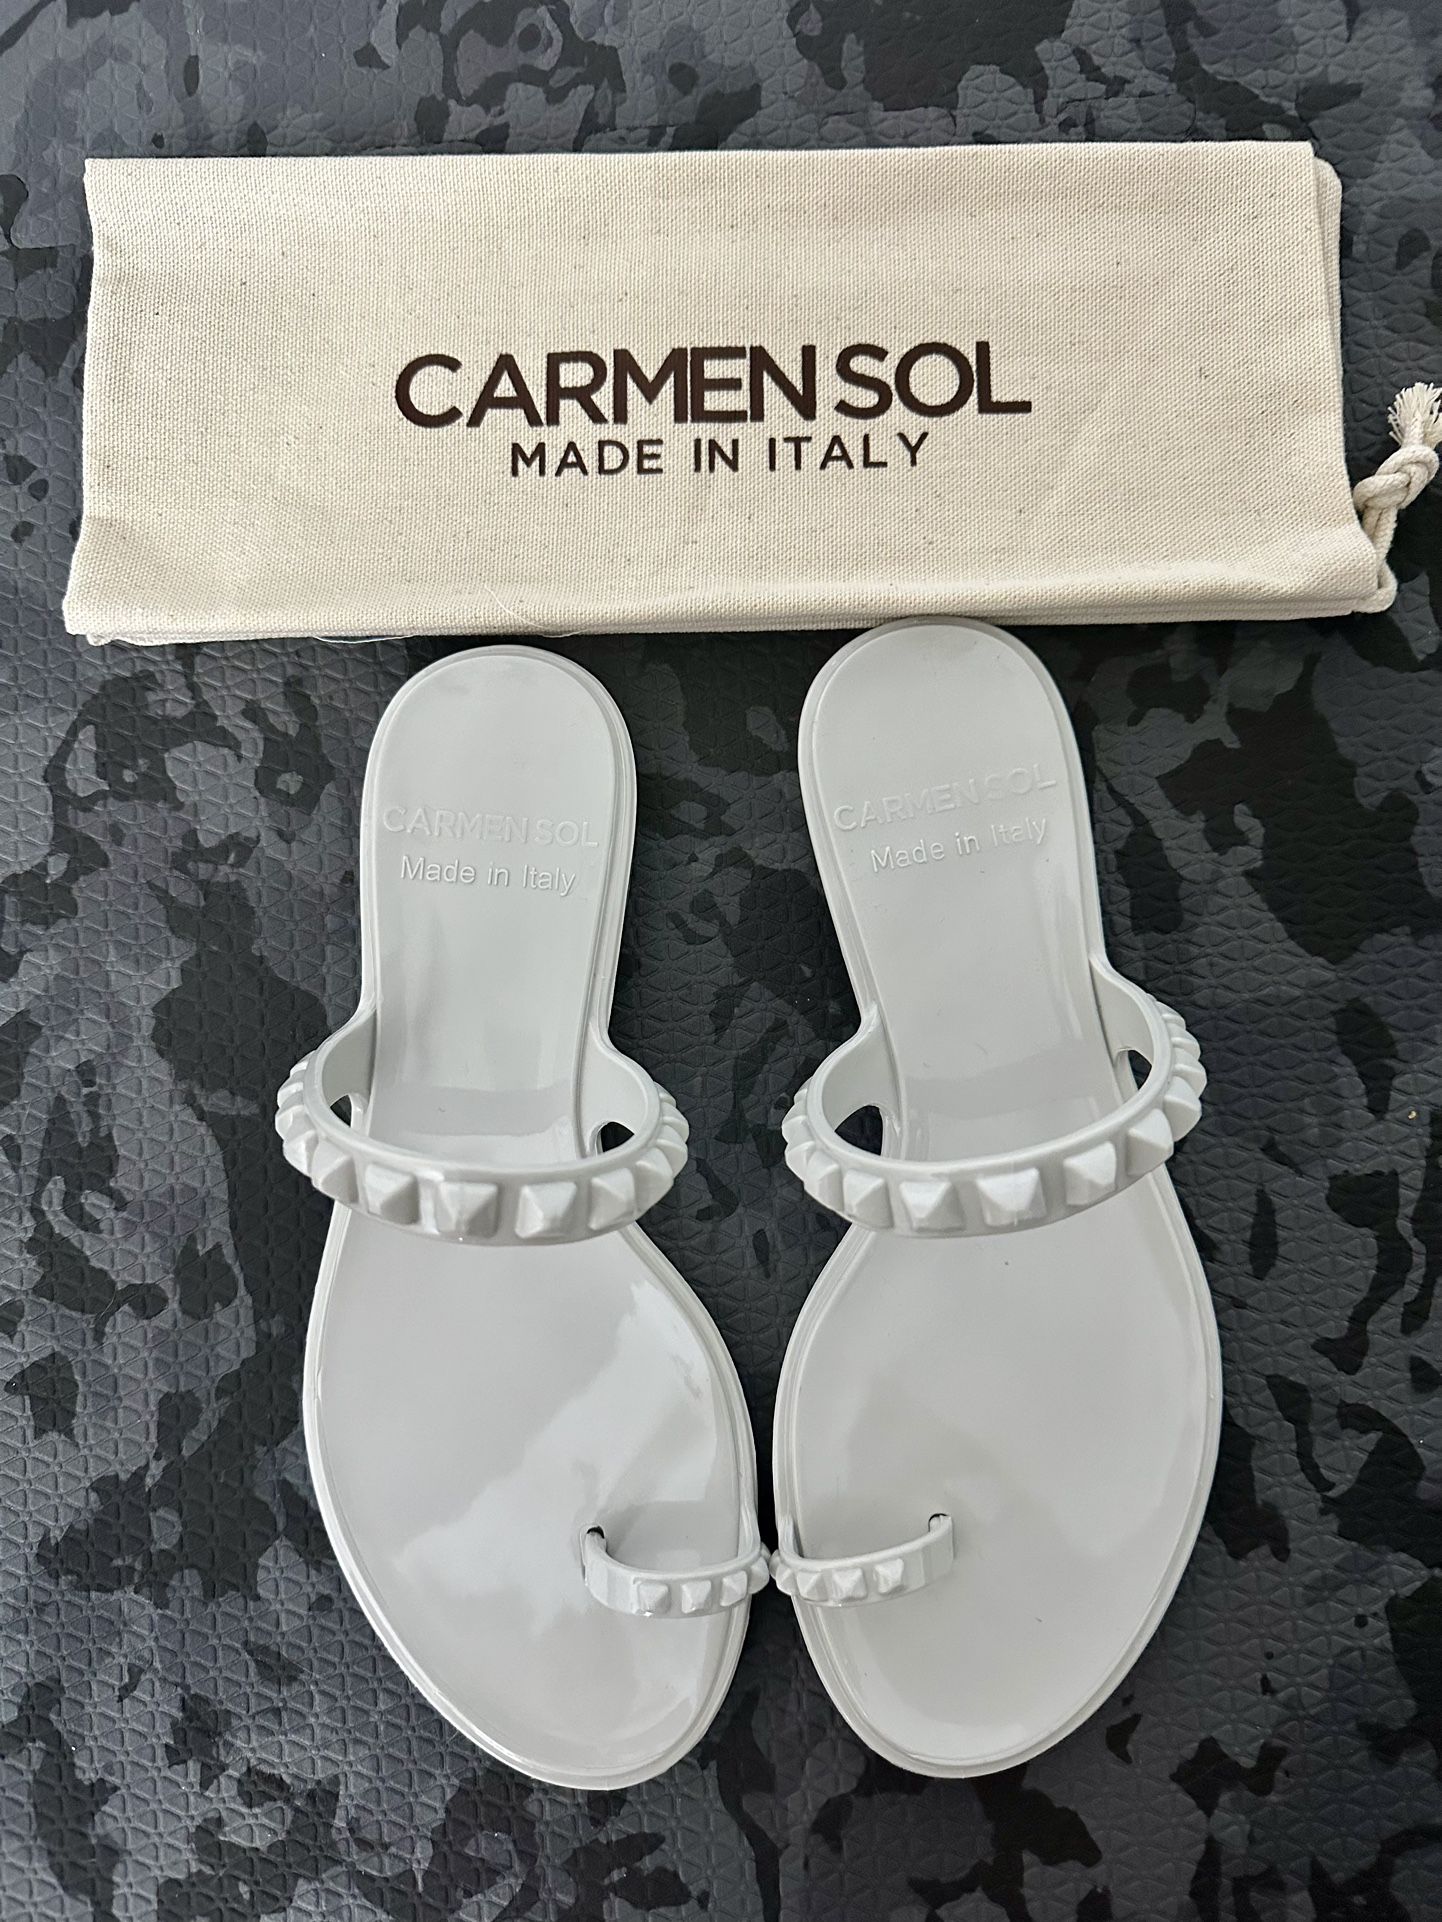 Carmen Sol Jellies / Sandals / Flats